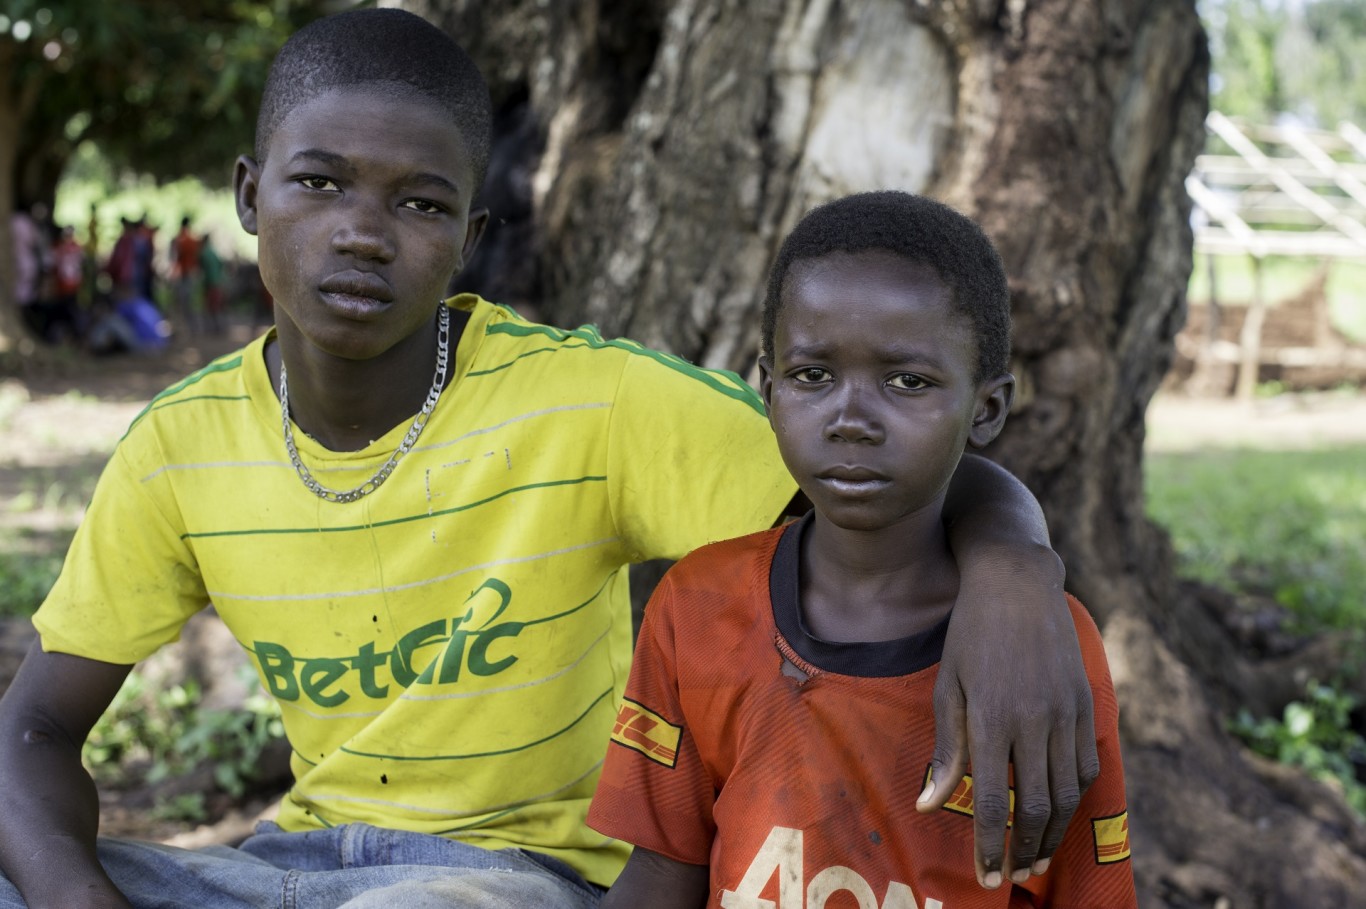 Ehemalige Kindersoldaten finden bei SOS-Kinderdorf ein neues Zuhause